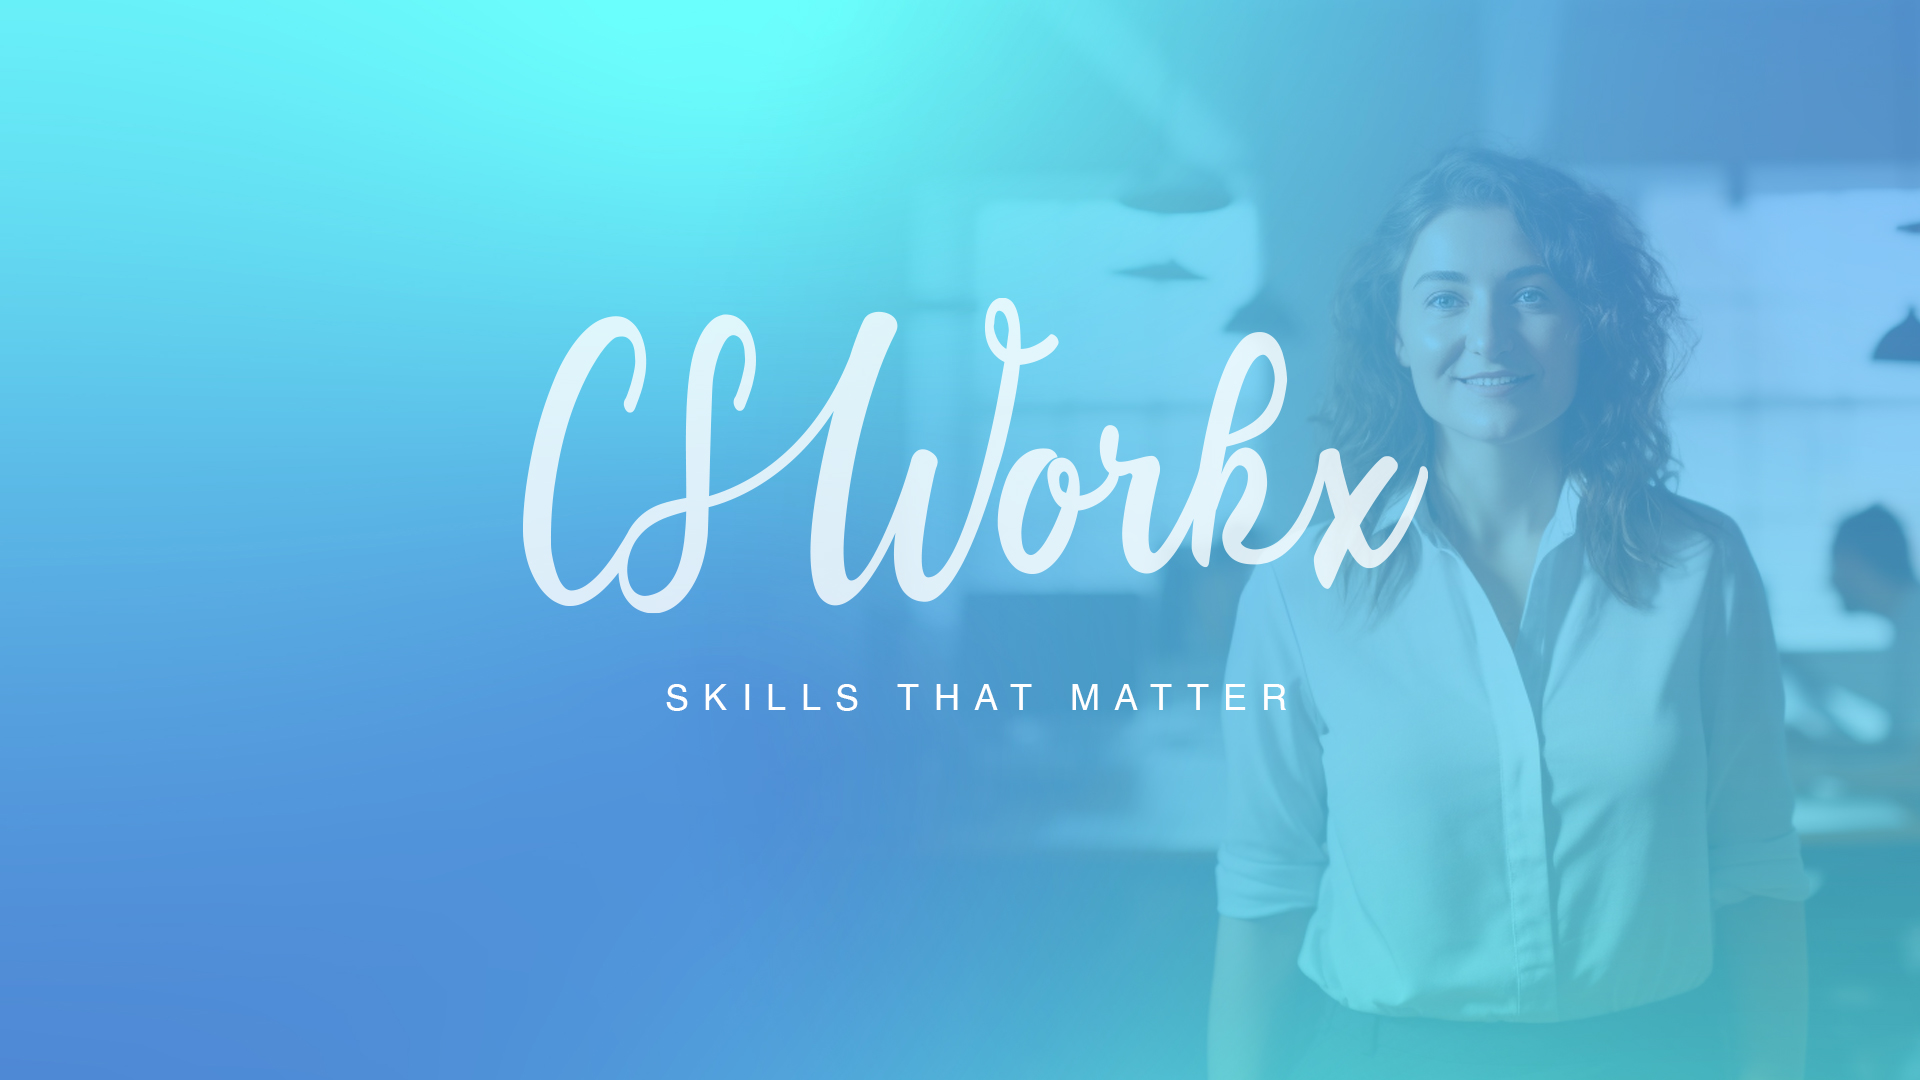 CS Workx - 21st Century Skills